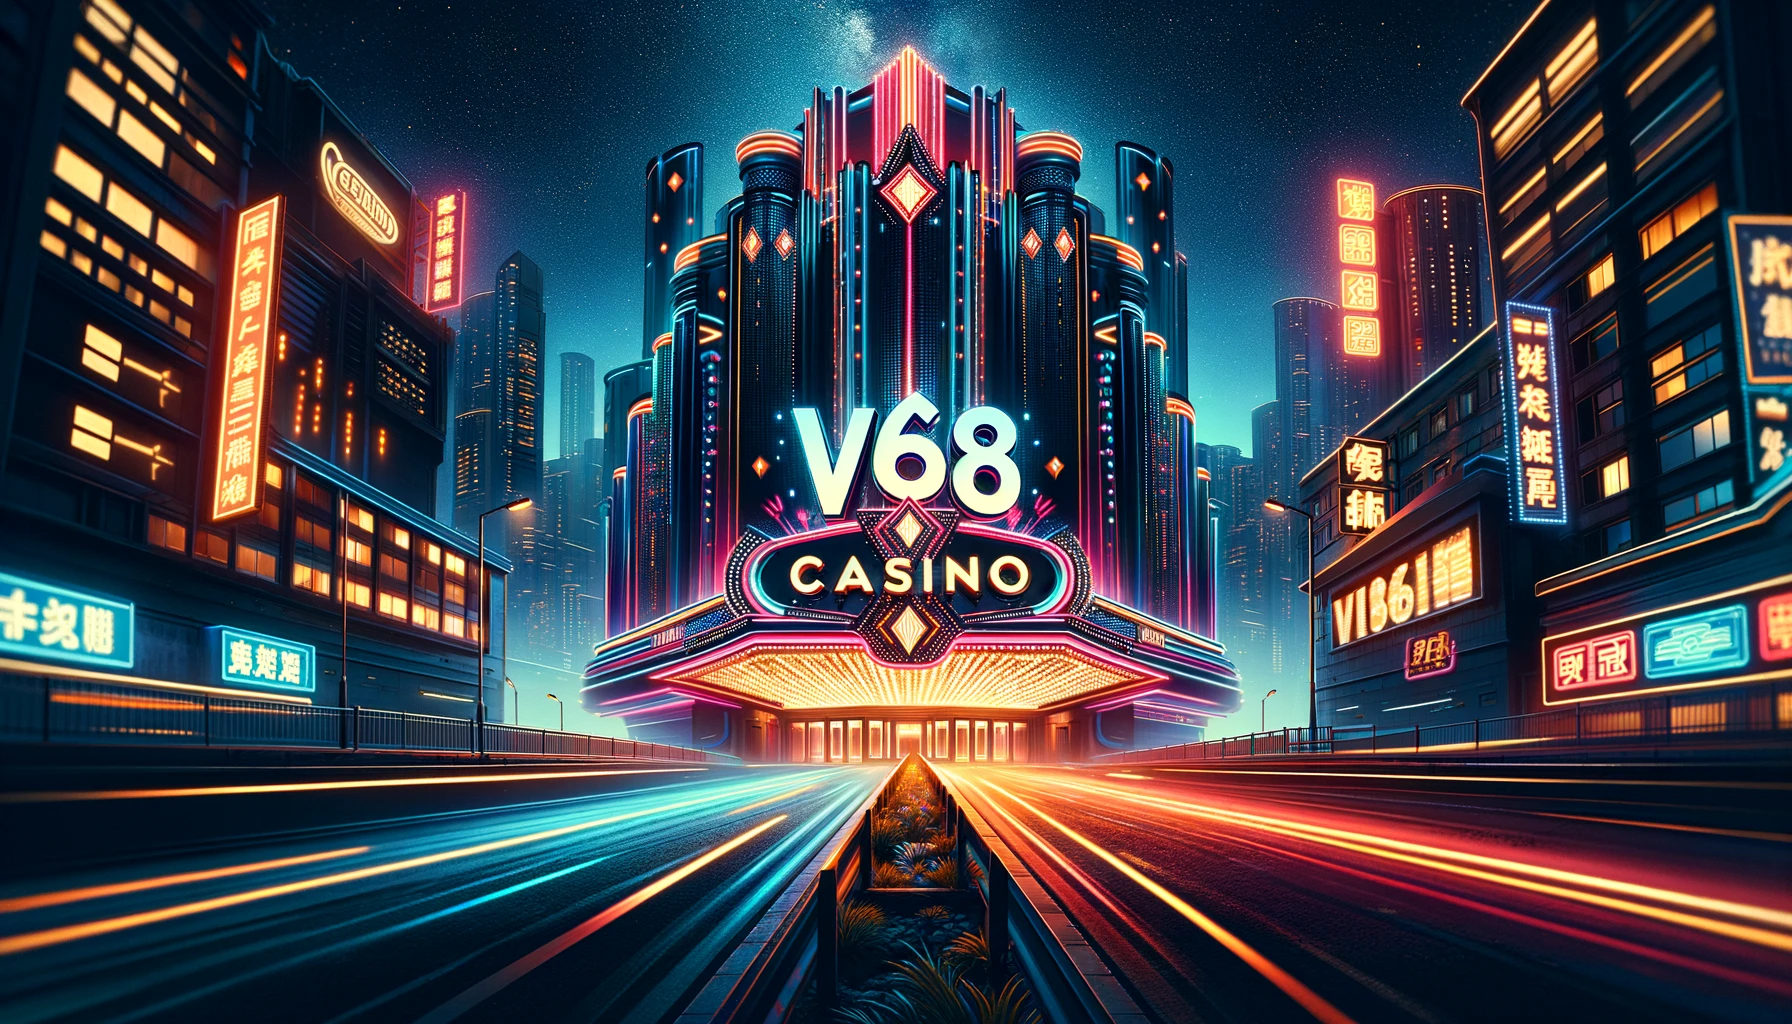 VI68 Casino phát triển mạnh tại Châu Á